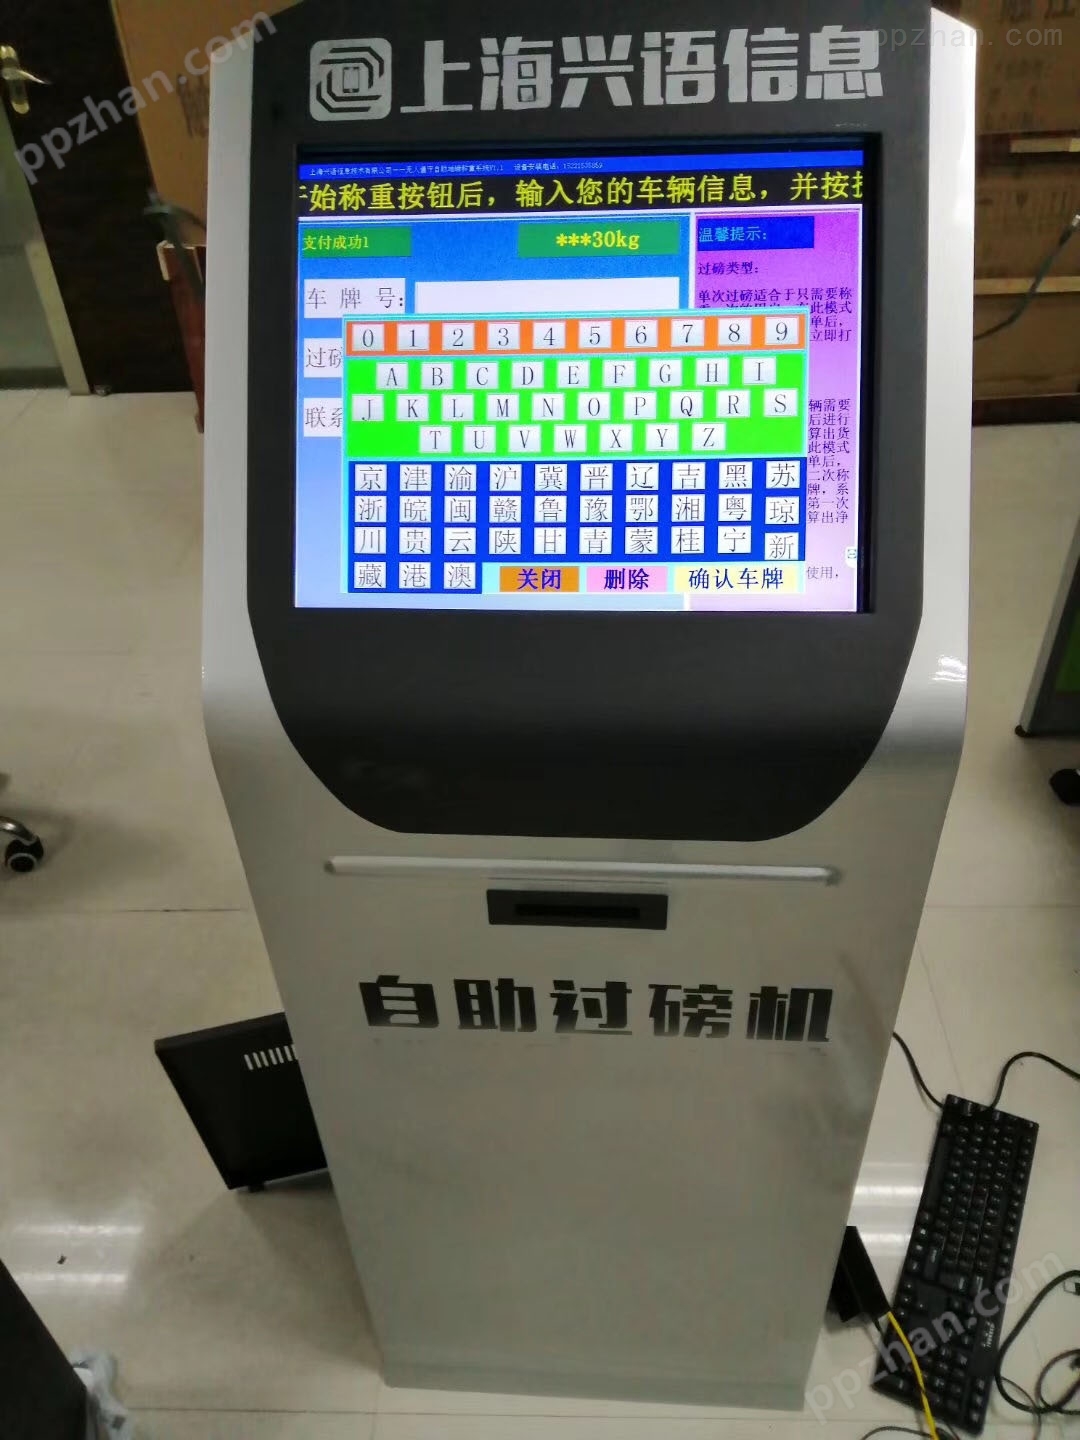 上海汽秤安装无人值守自动过磅收费打印系统